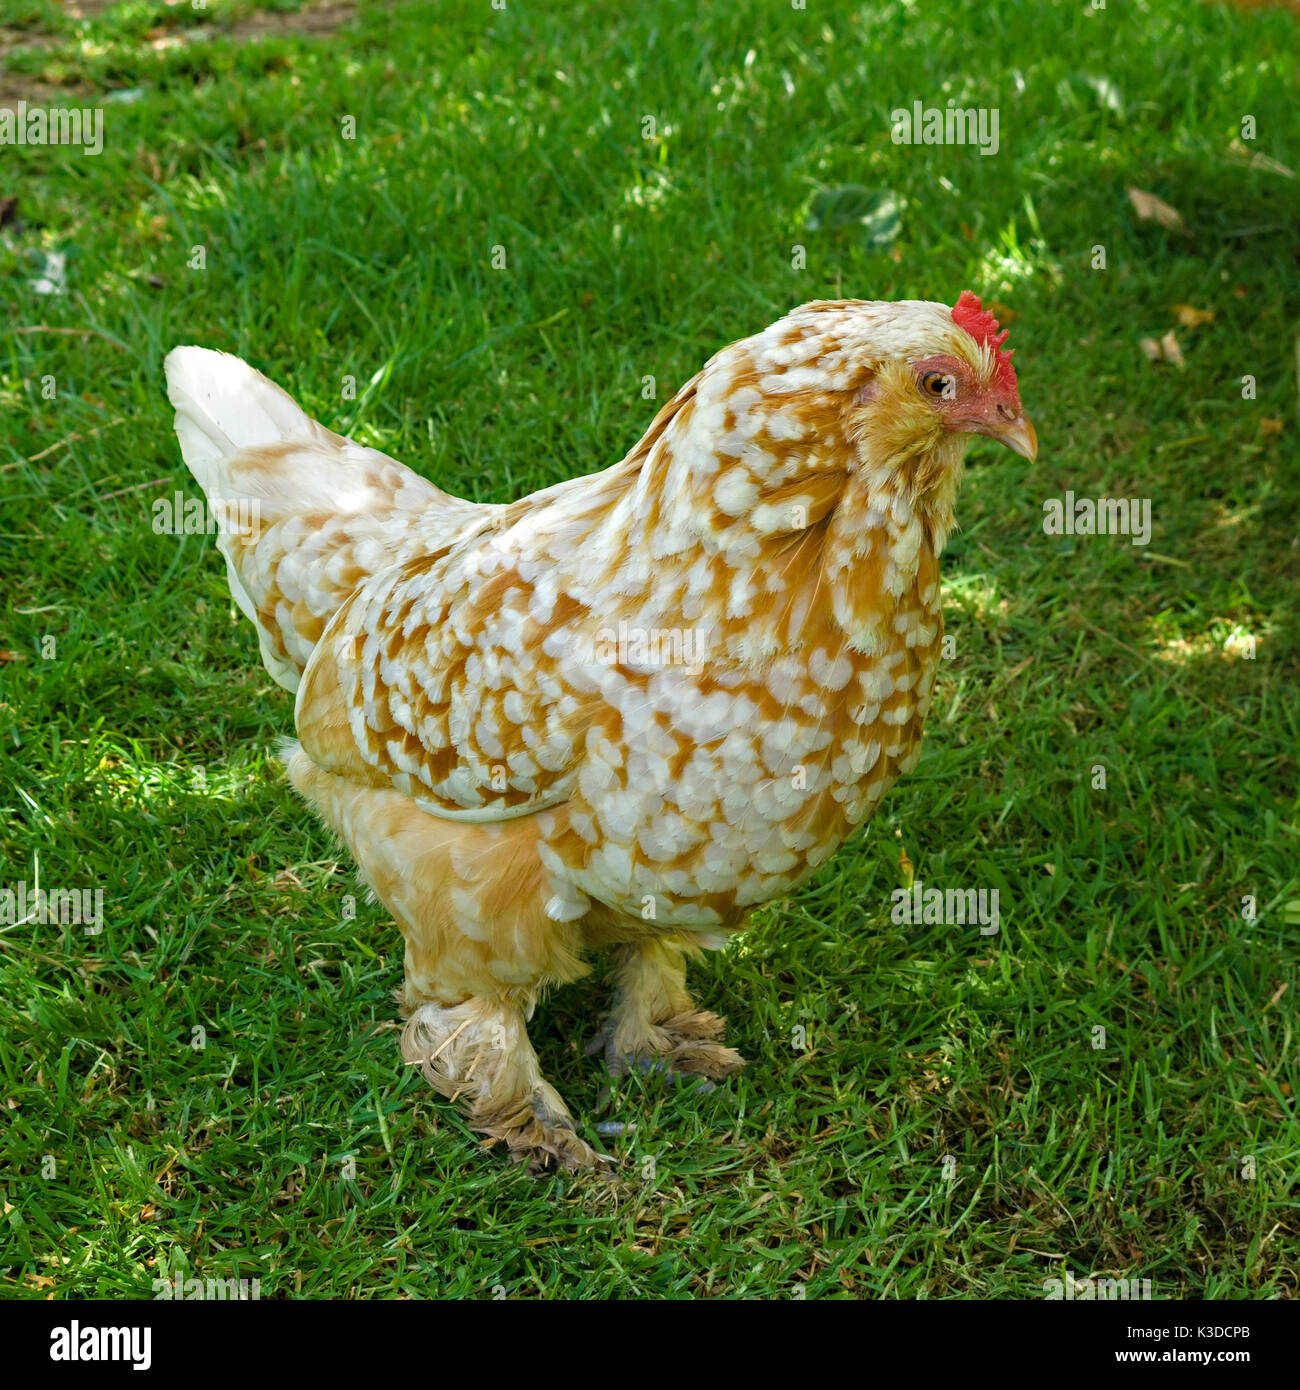 Fancy Free Range pollo con plumas de pies en el verde césped Foto de stock